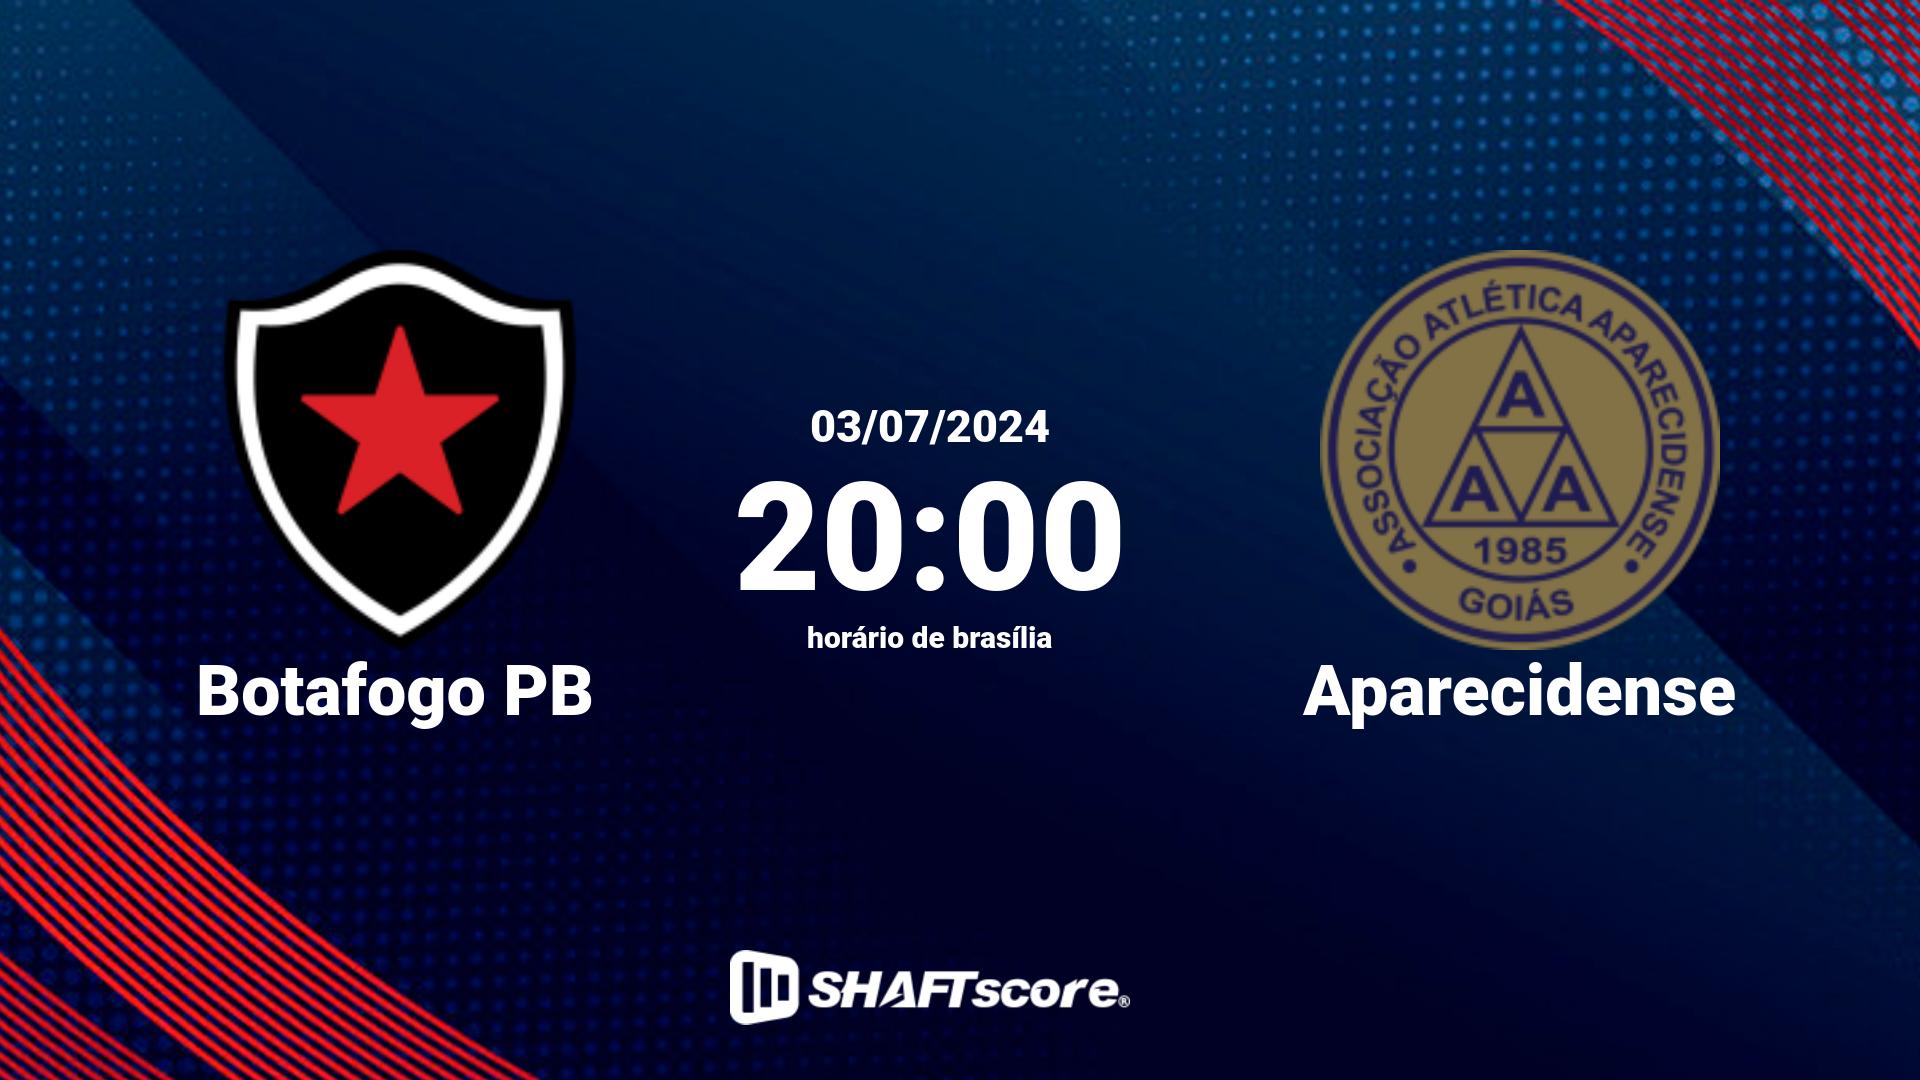 Estatísticas do jogo Botafogo PB vs Aparecidense 03.07 20:00